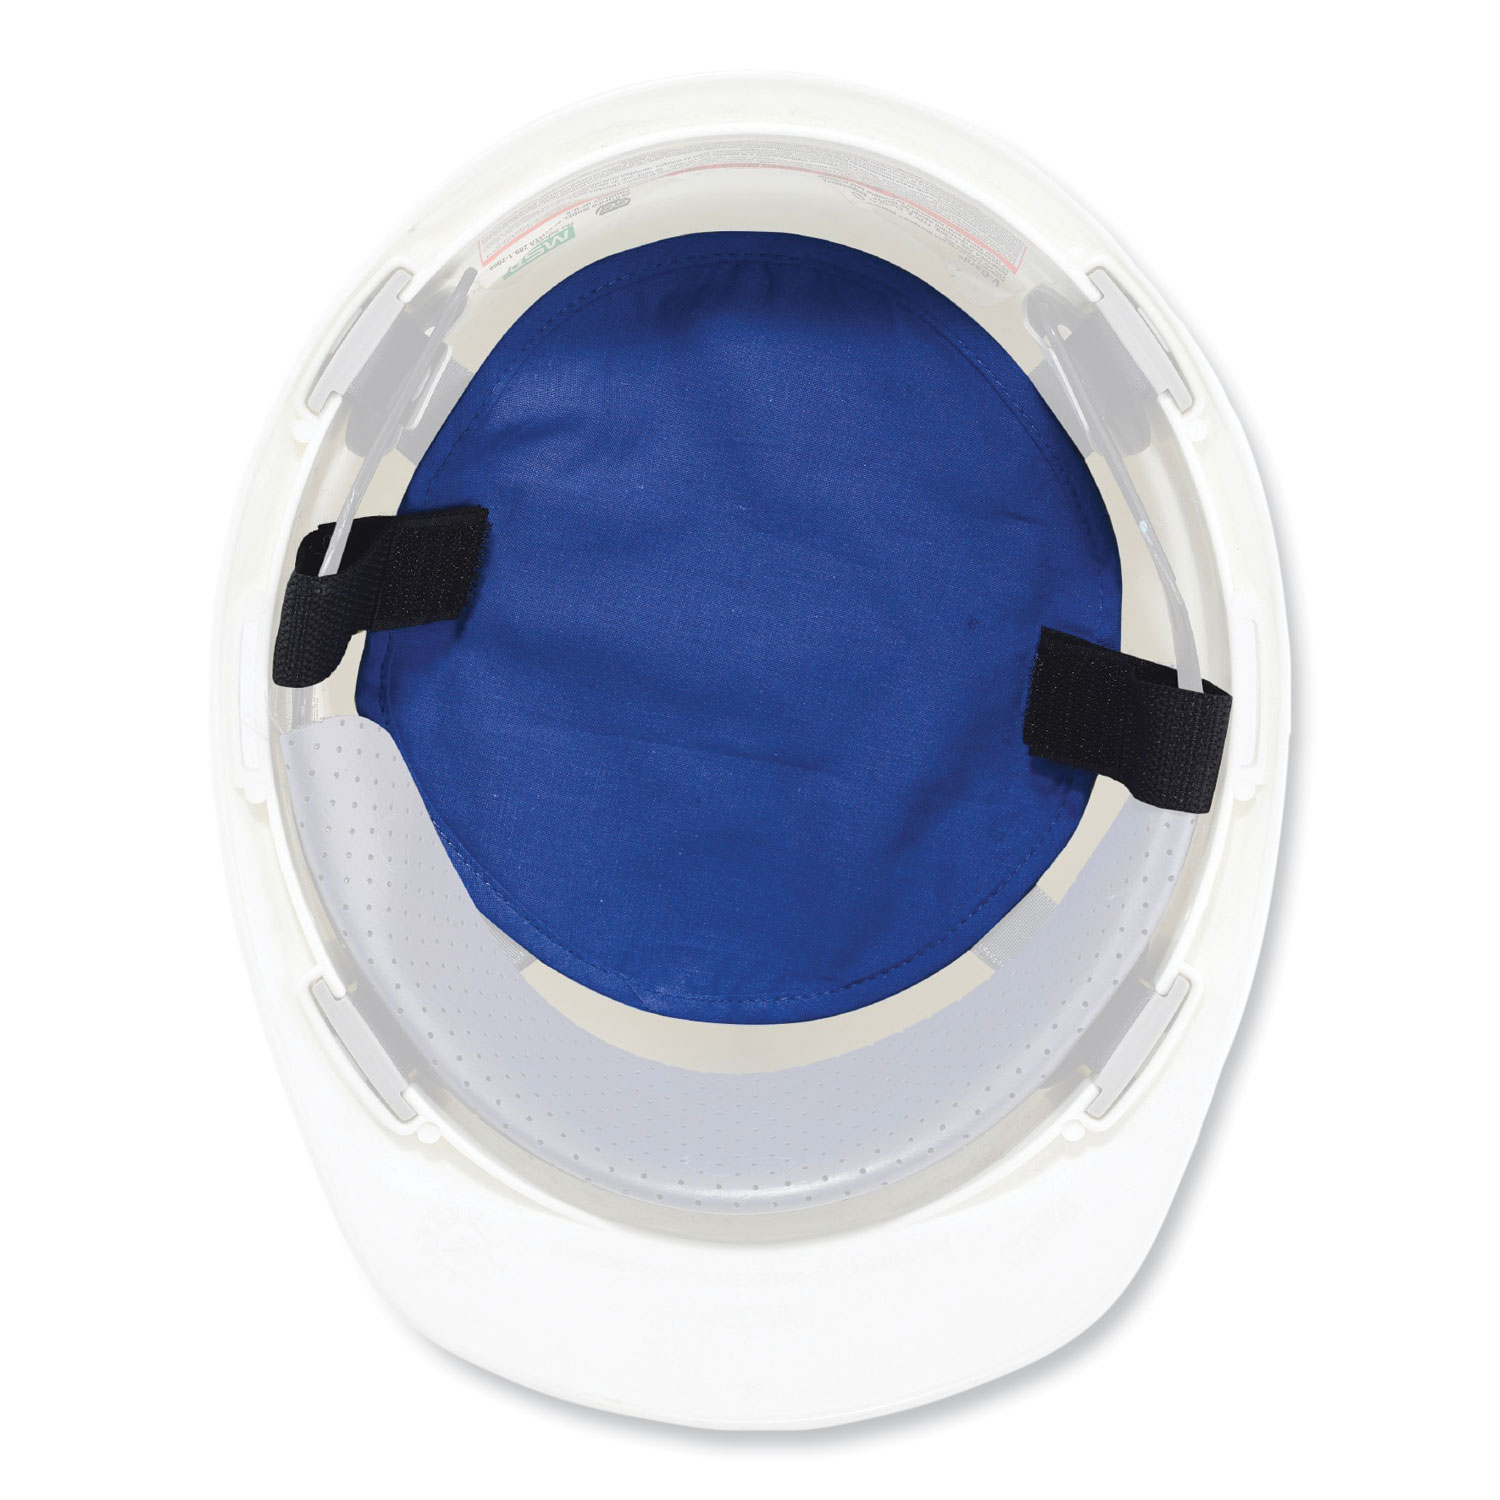 Cooling Evaporative Technology Helmet Liner for most helmets